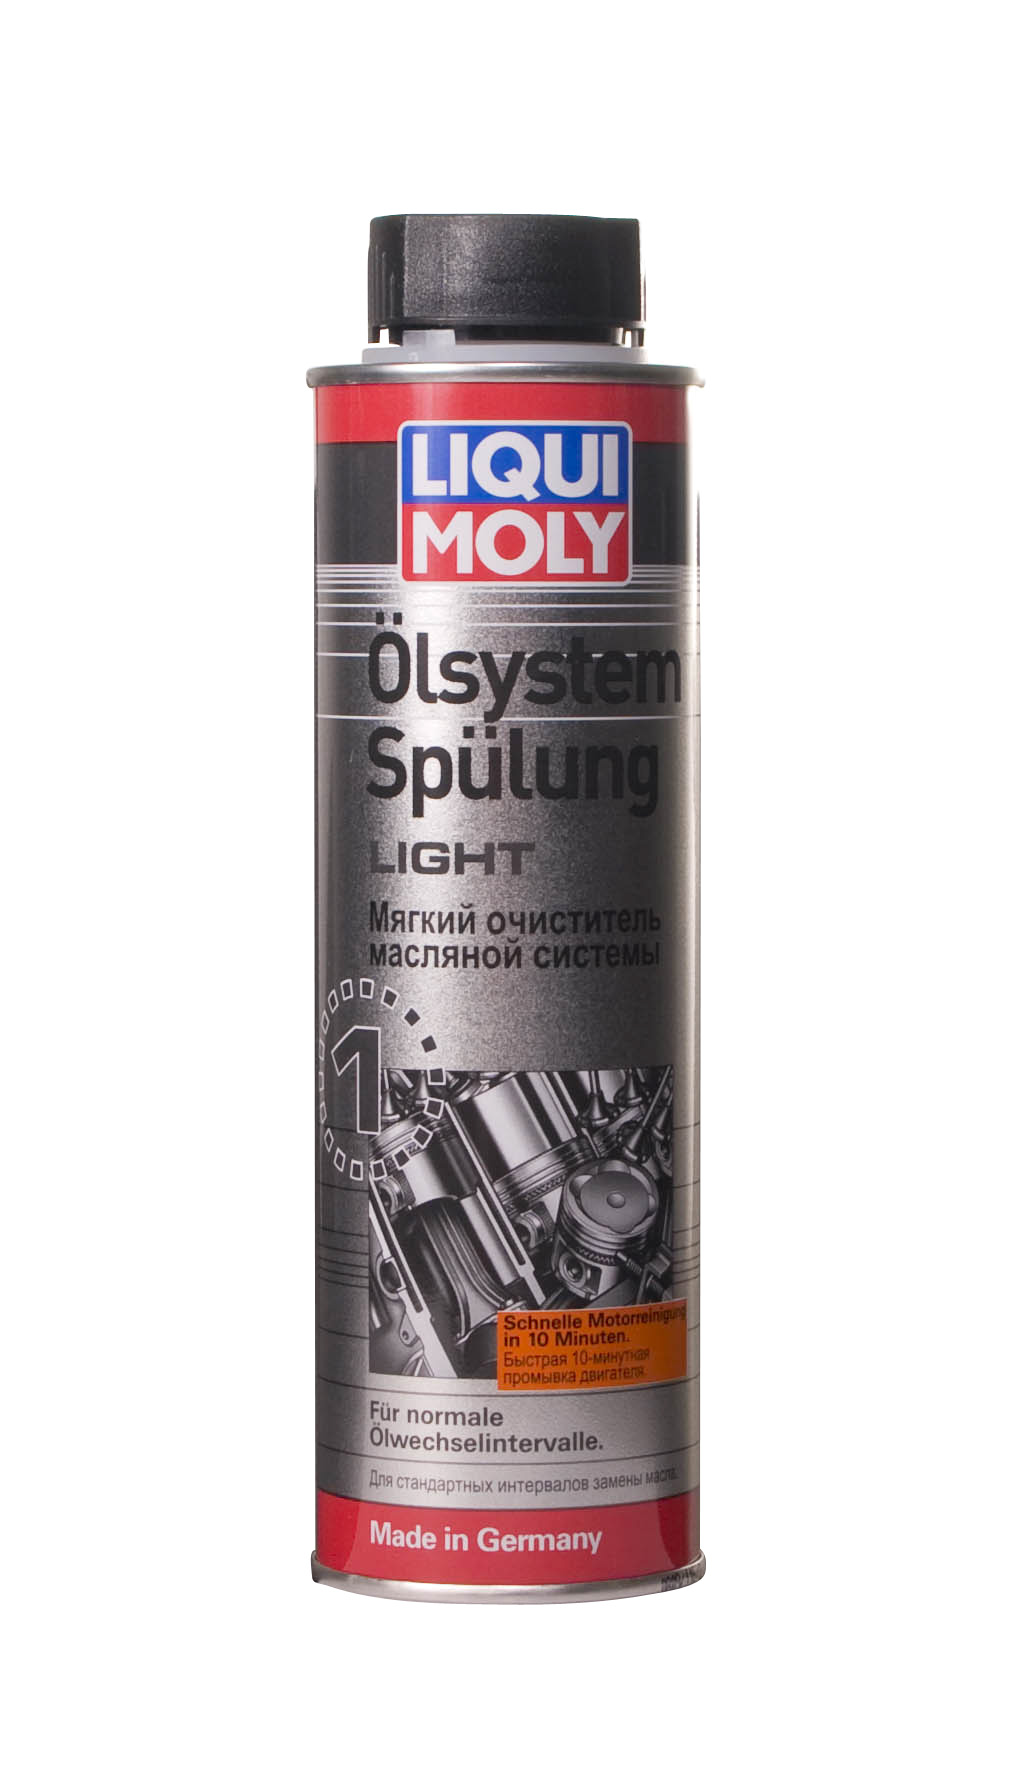 Купить запчасть LIQUI MOLY - 7590 Мягкий очиститель масляной системы Oilsystem Spulung Light